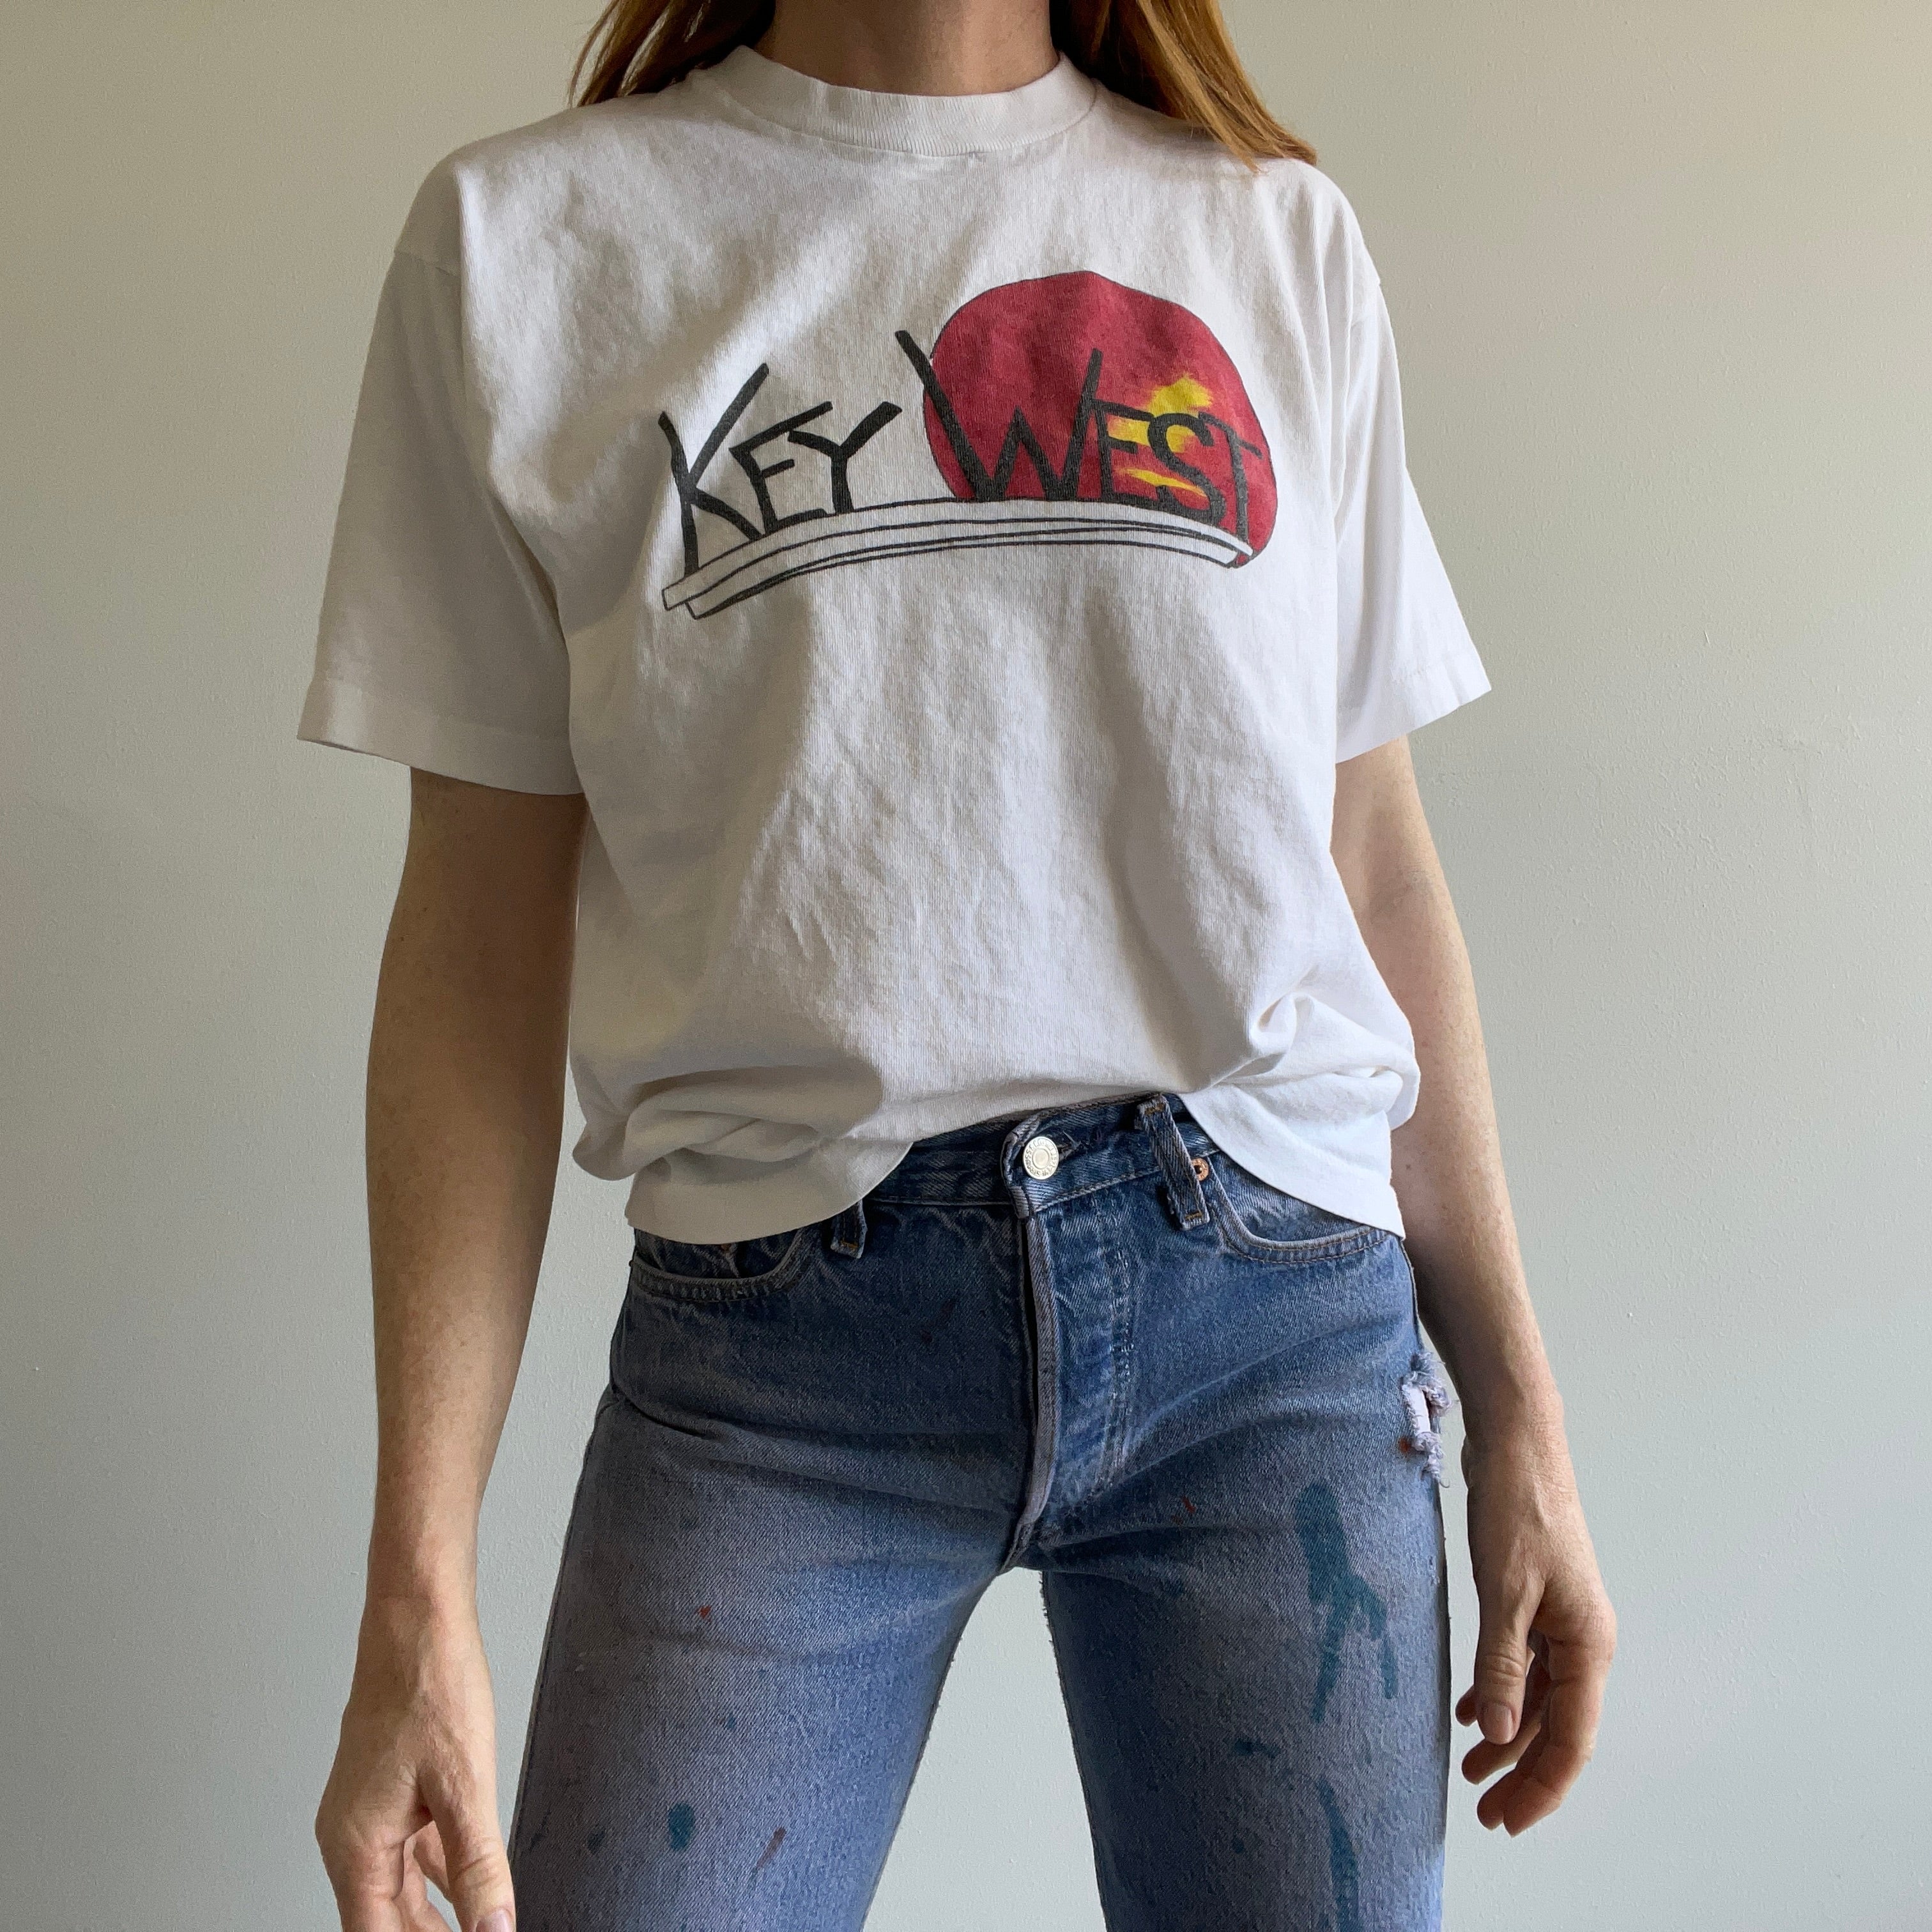 1980s Key West Cotton Tourist T-Shirt by FOTL